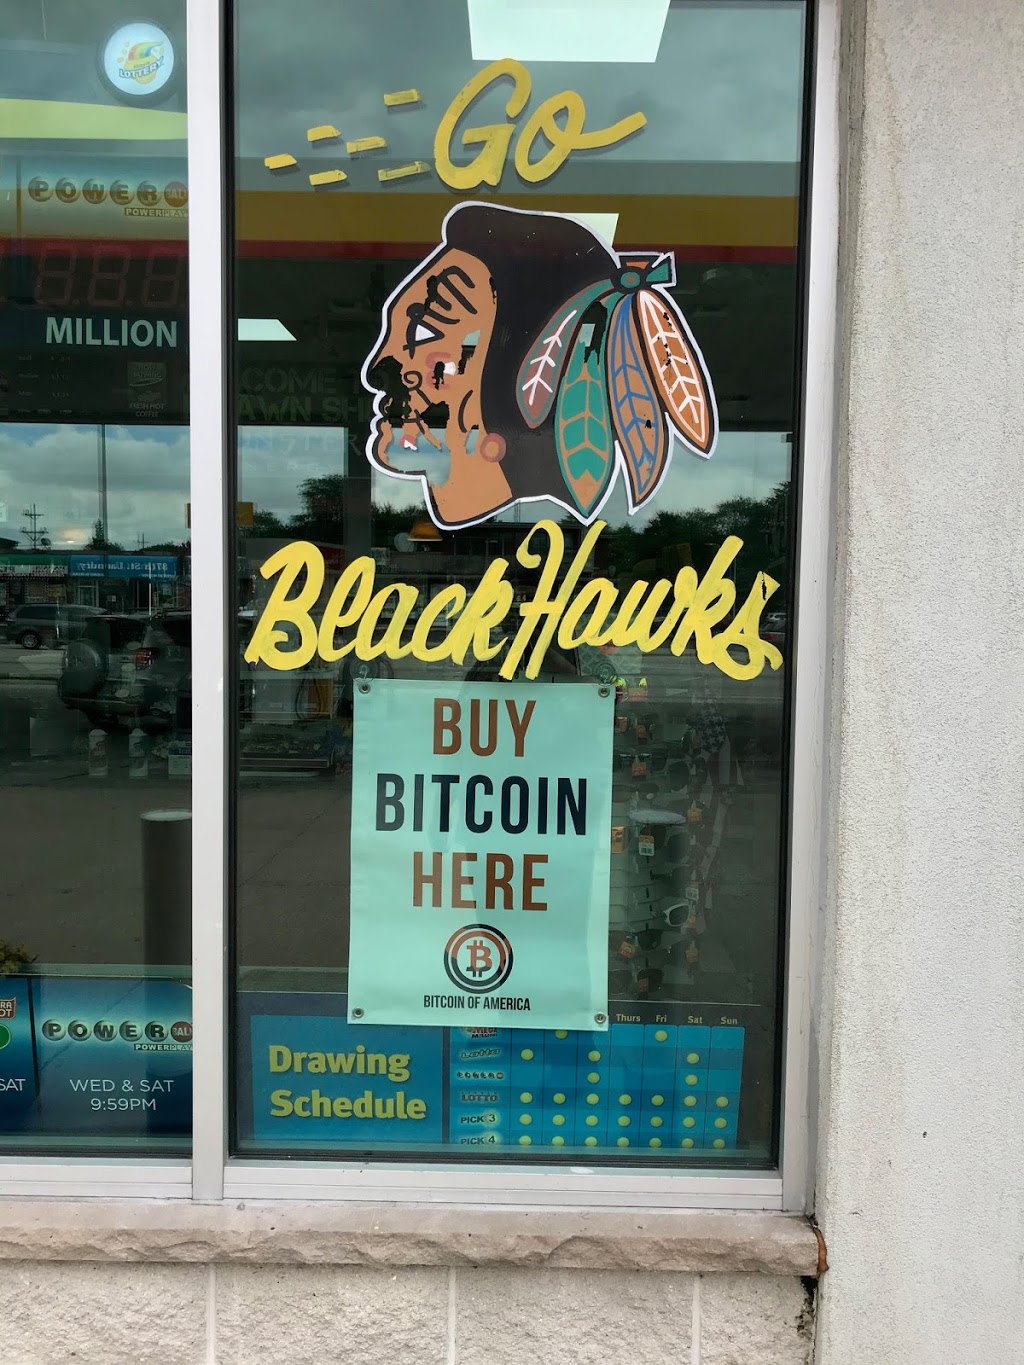 Bitcoin of America - Bitcoin ATM | 5601 W 87th St, Oak Lawn, IL 60453, USA | Phone: (888) 502-5003